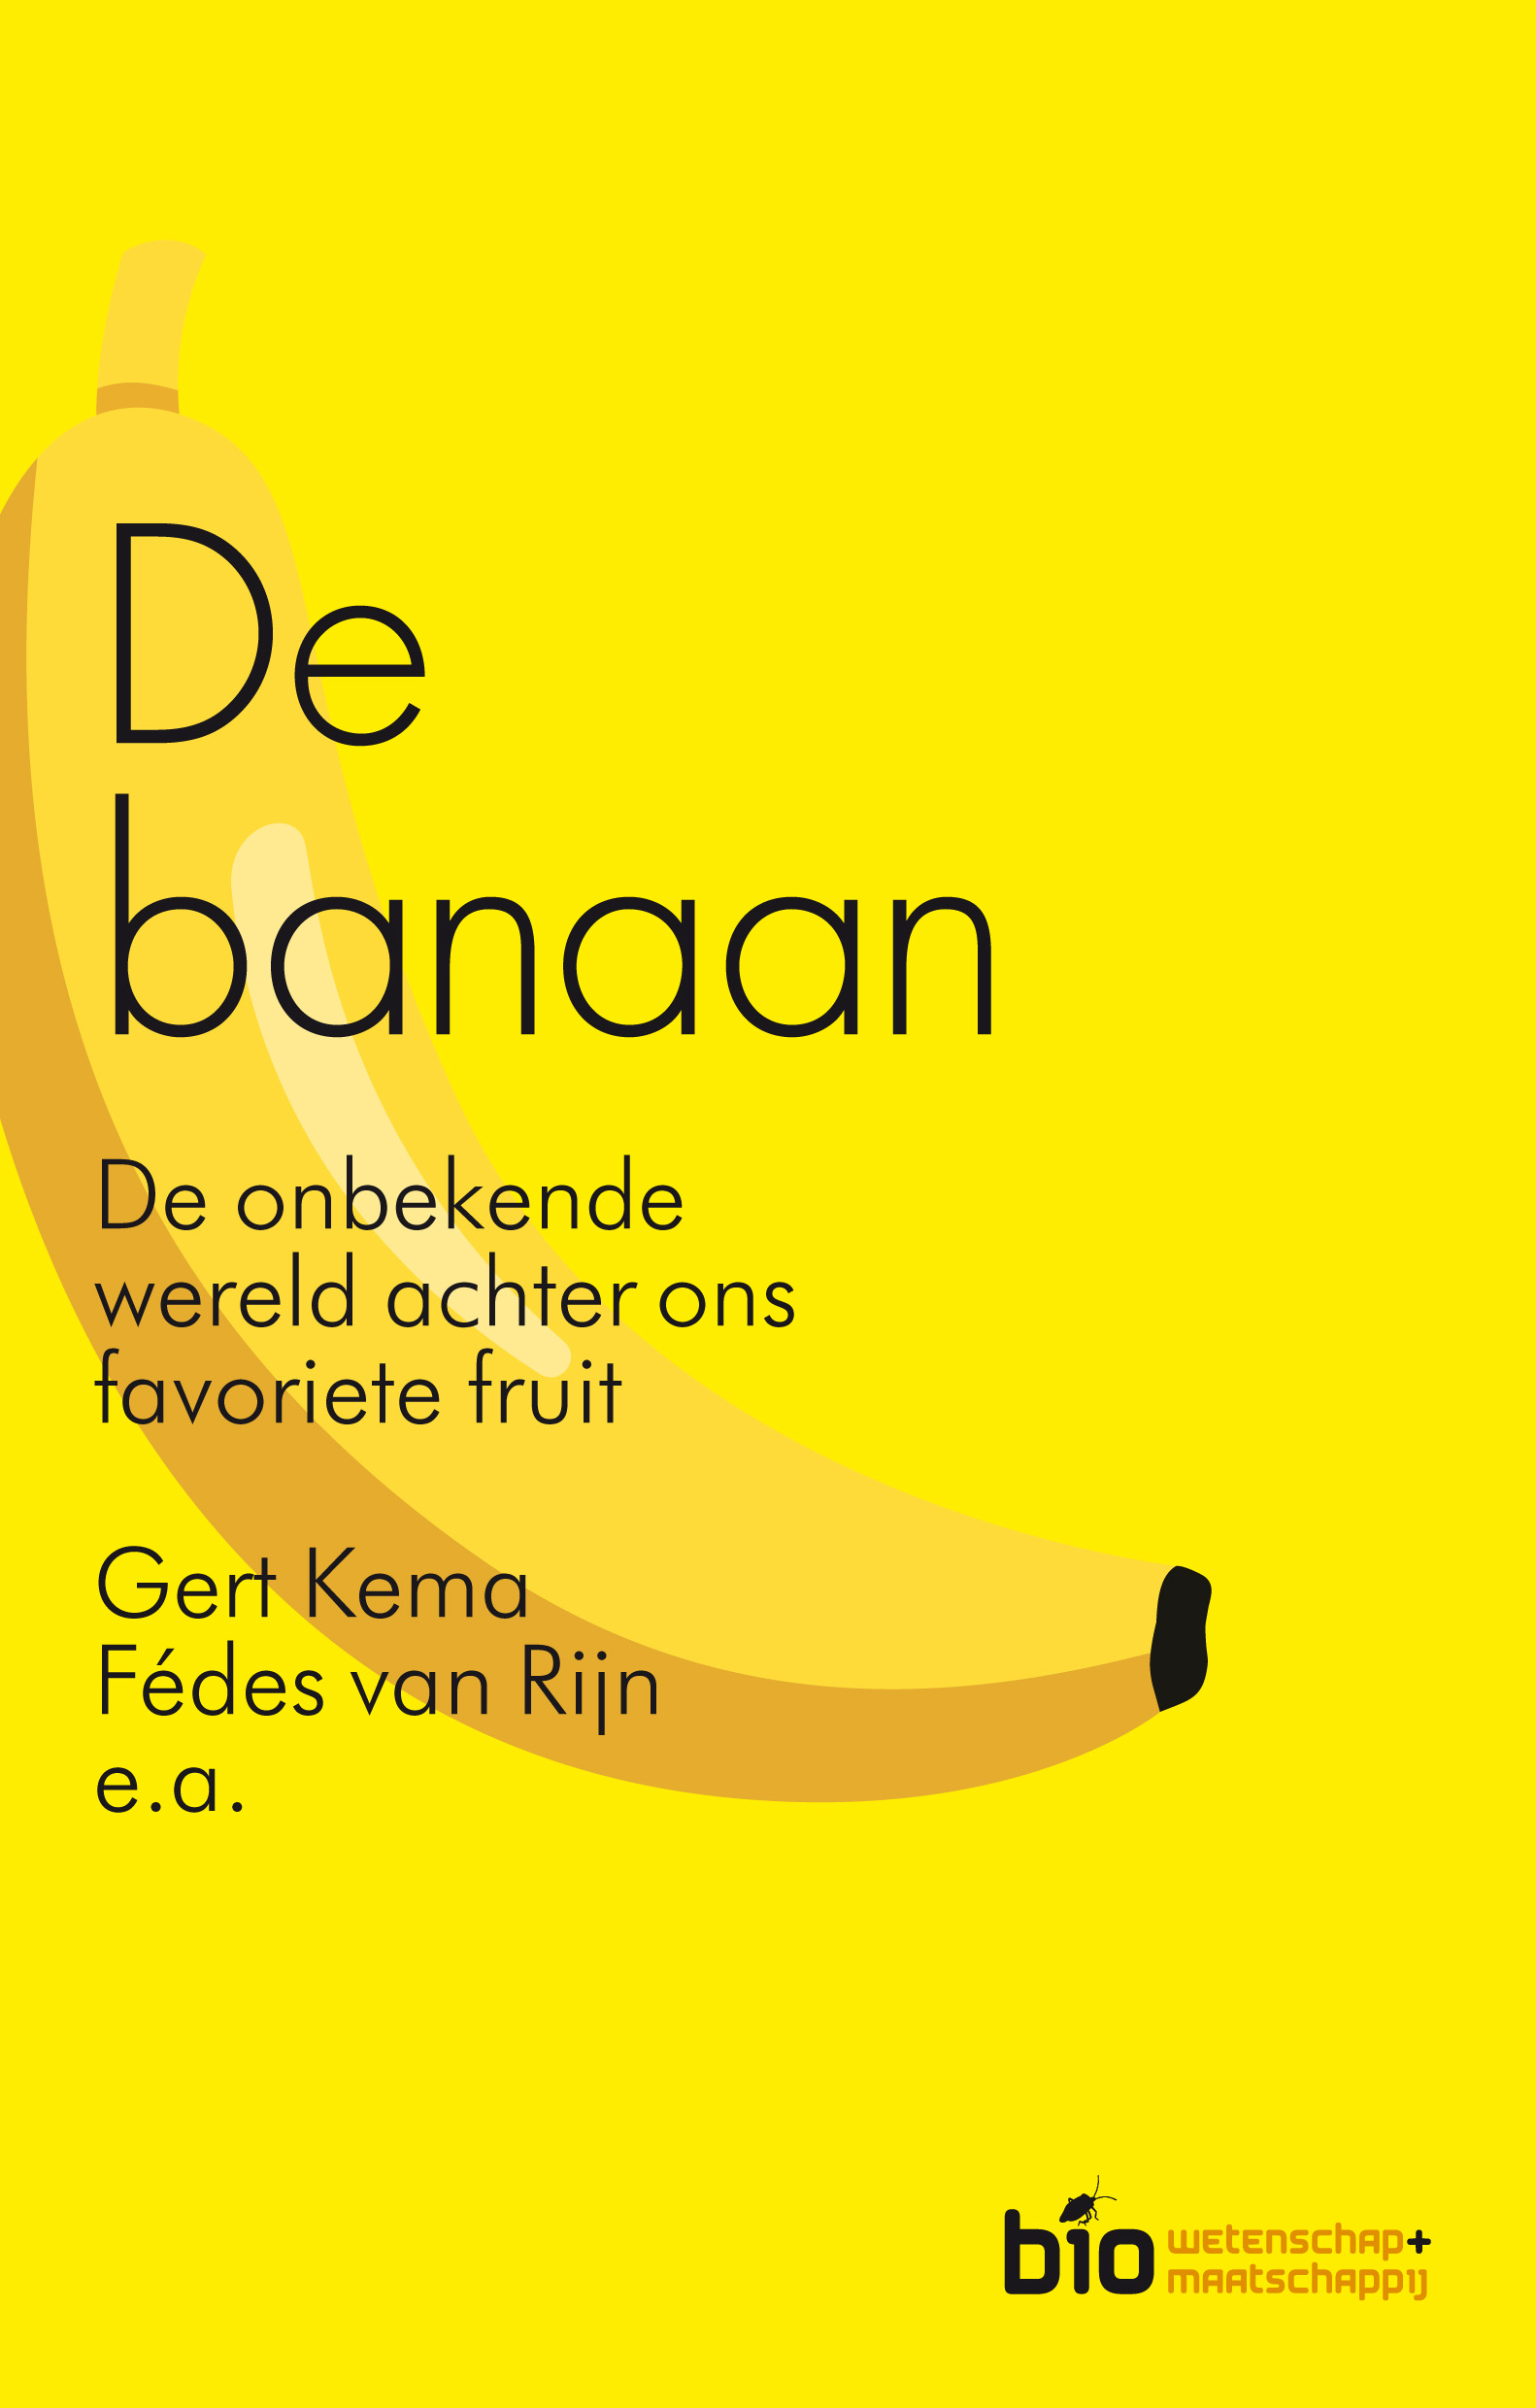 De banaan